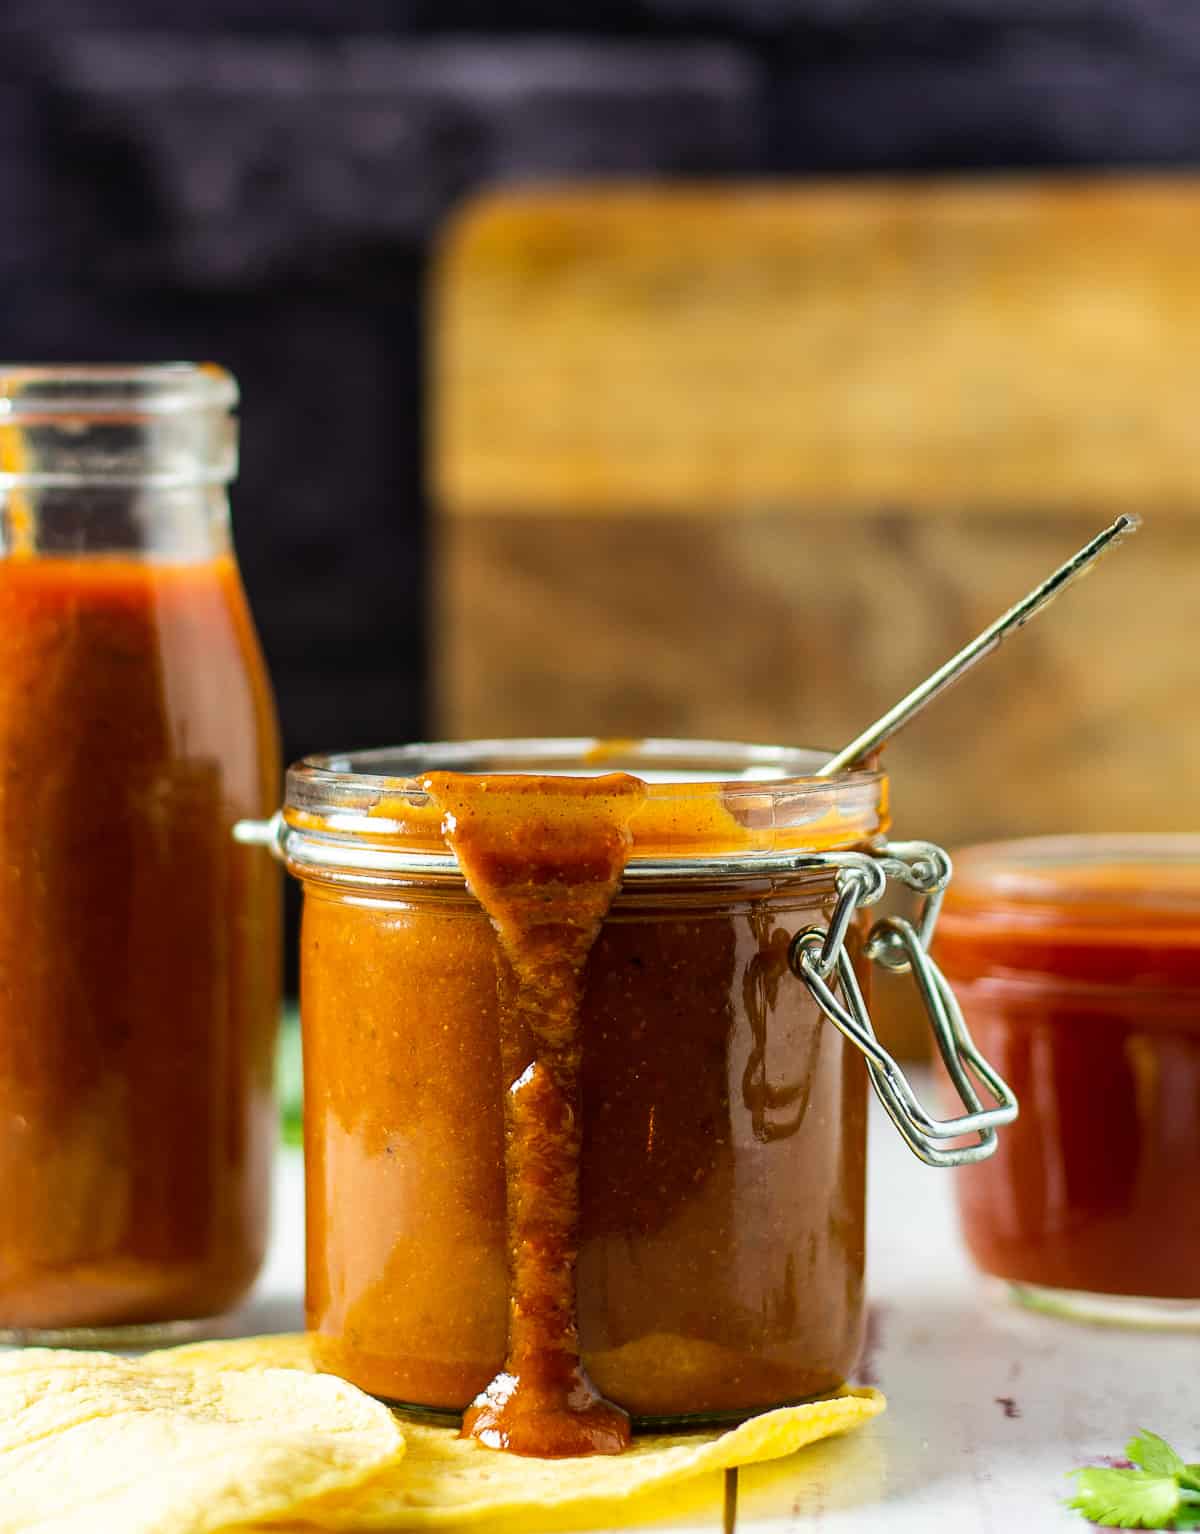 Enchilada sauce in glass jar.